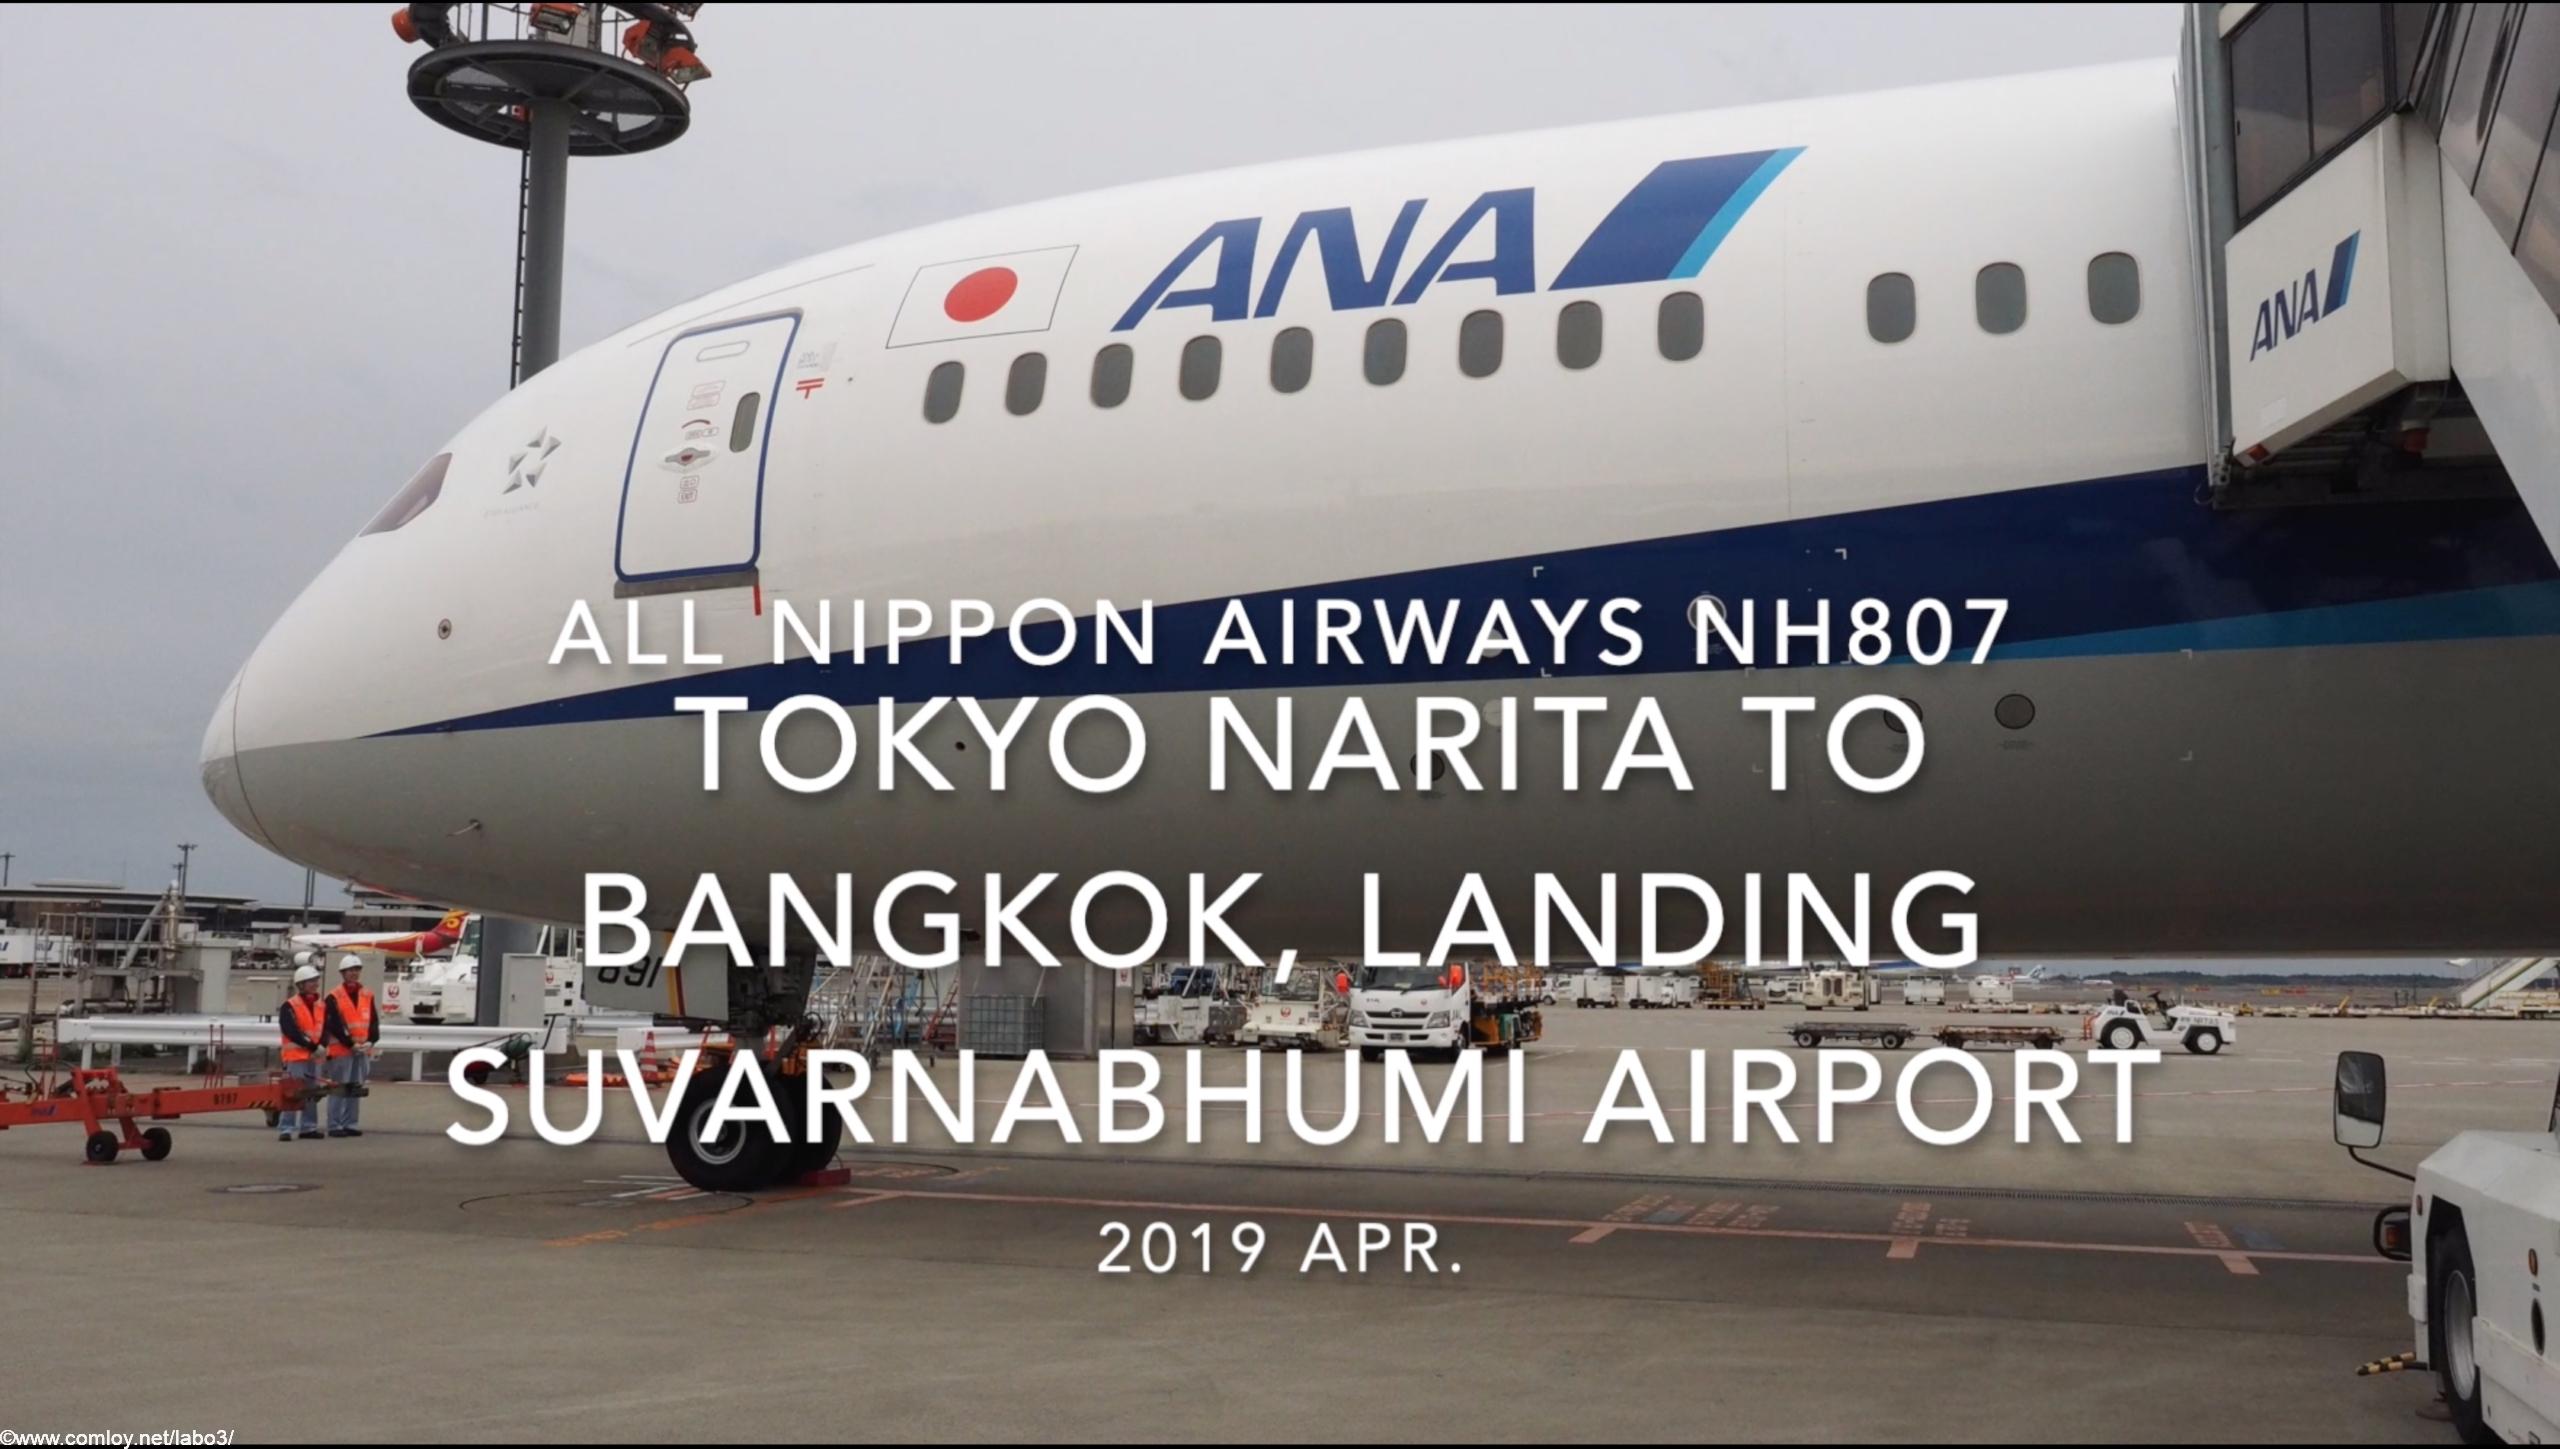 【機内から離着陸映像】2019 Apr All Nippon Airways NH807 TOKYO NARITA to BANGKOK, Landing Suvarnabhumi Airport